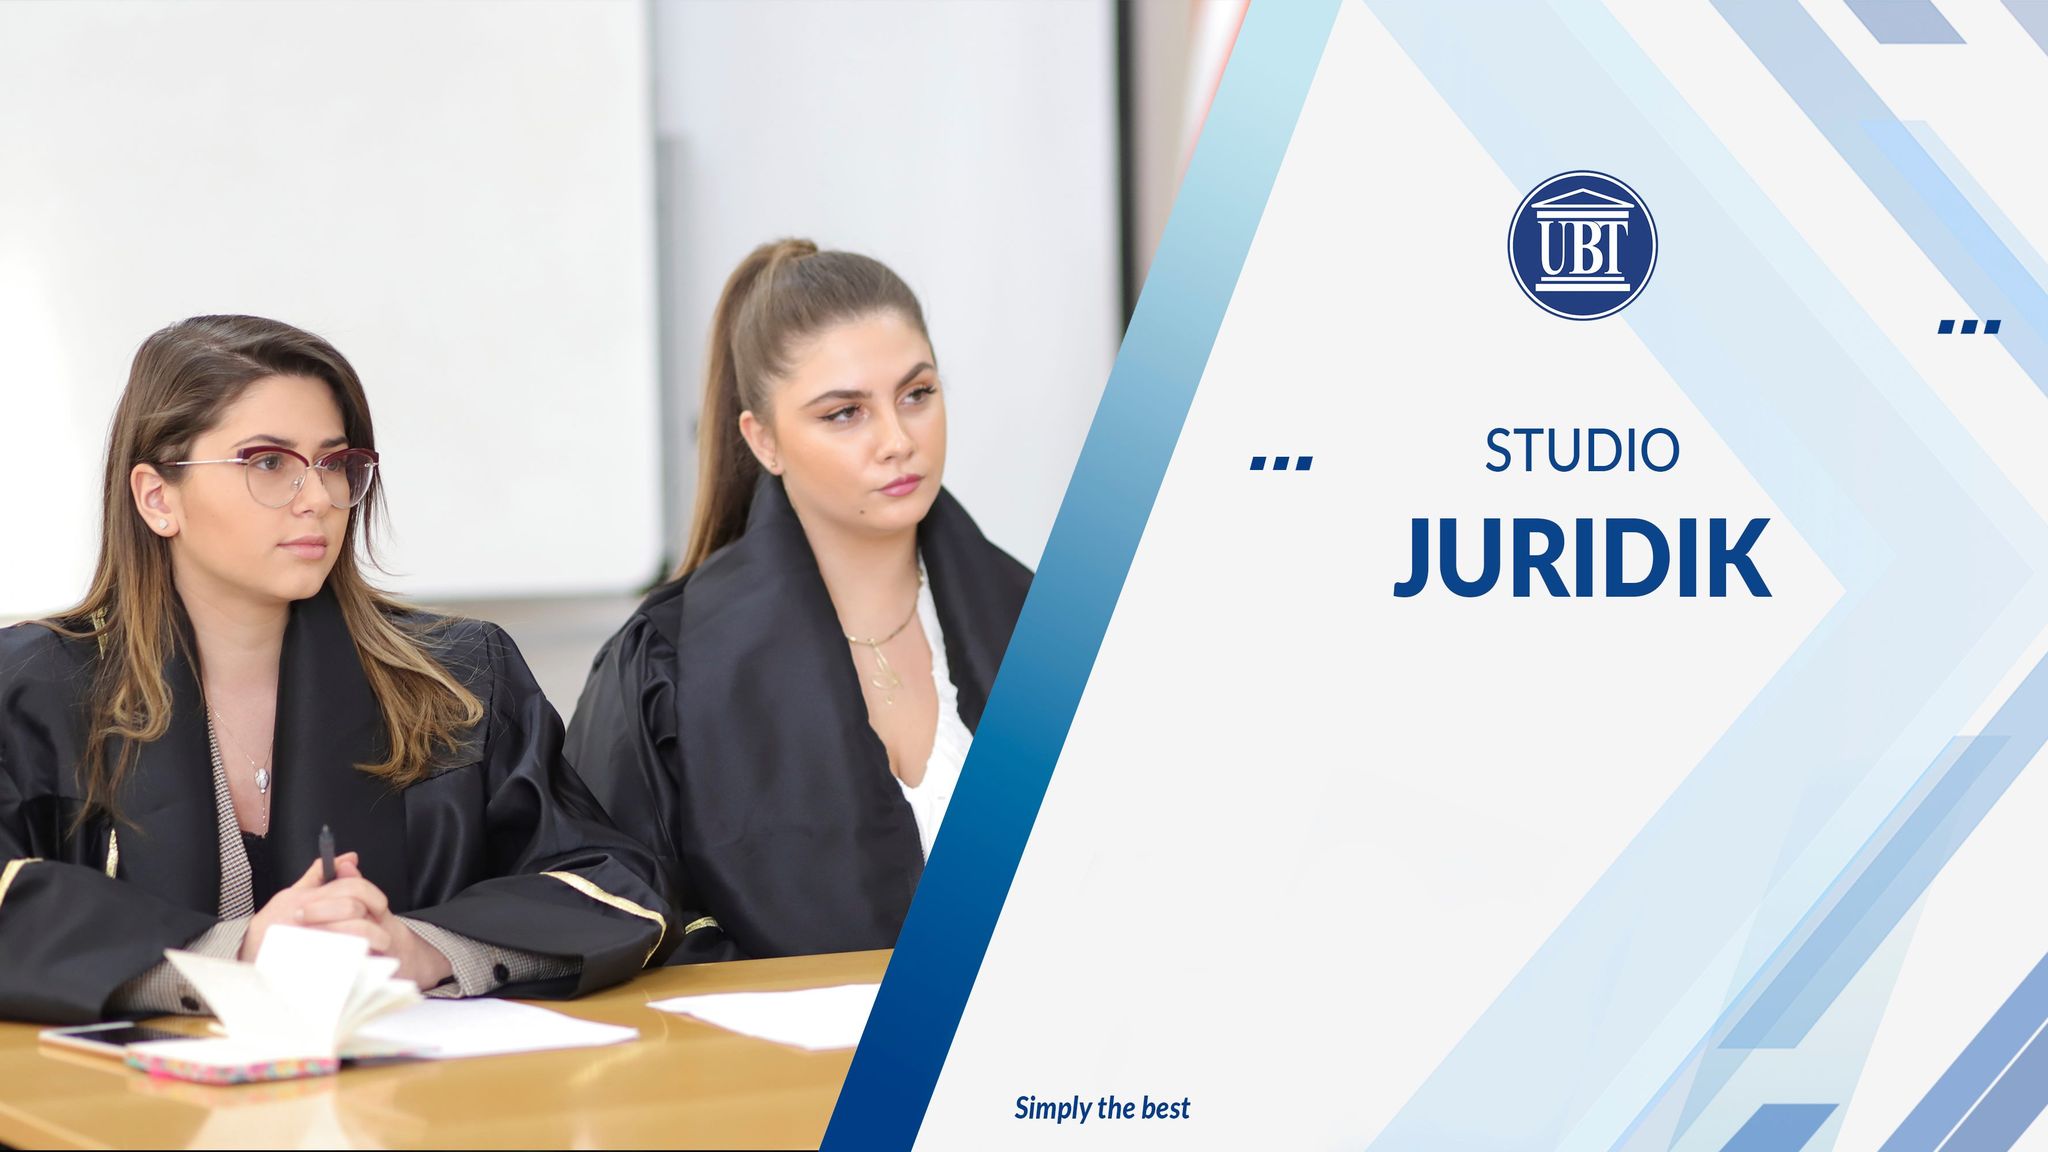 Fakulteti Juridik në UBT, programi më i kompletuar në rajon në fushën e drejtësisë